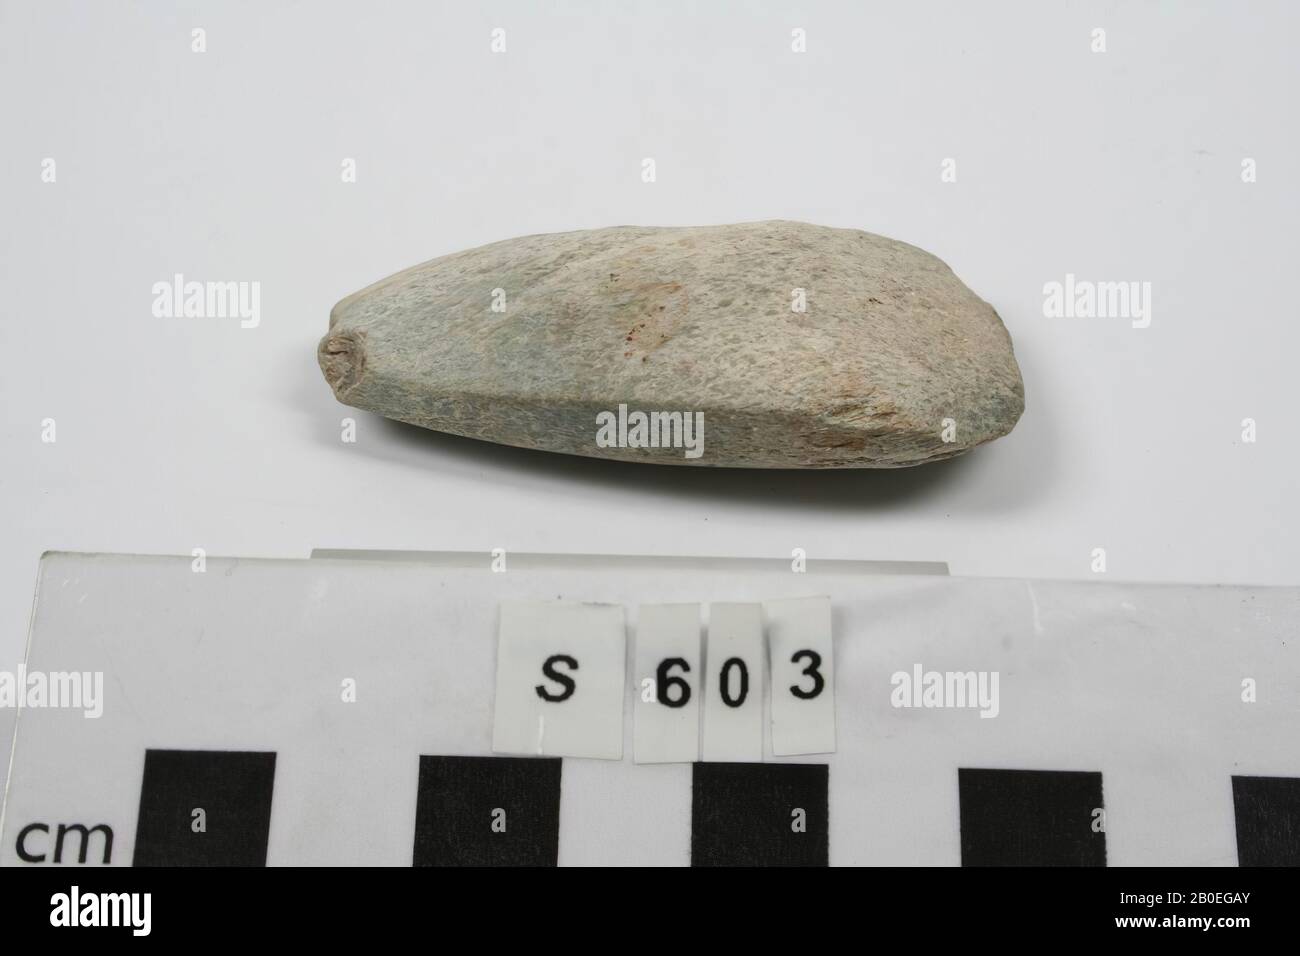 Un hacha de piedra oblongo, abierto al corte., Herramientas, arma, piedra, L 6.8 cm, pavo Foto de stock